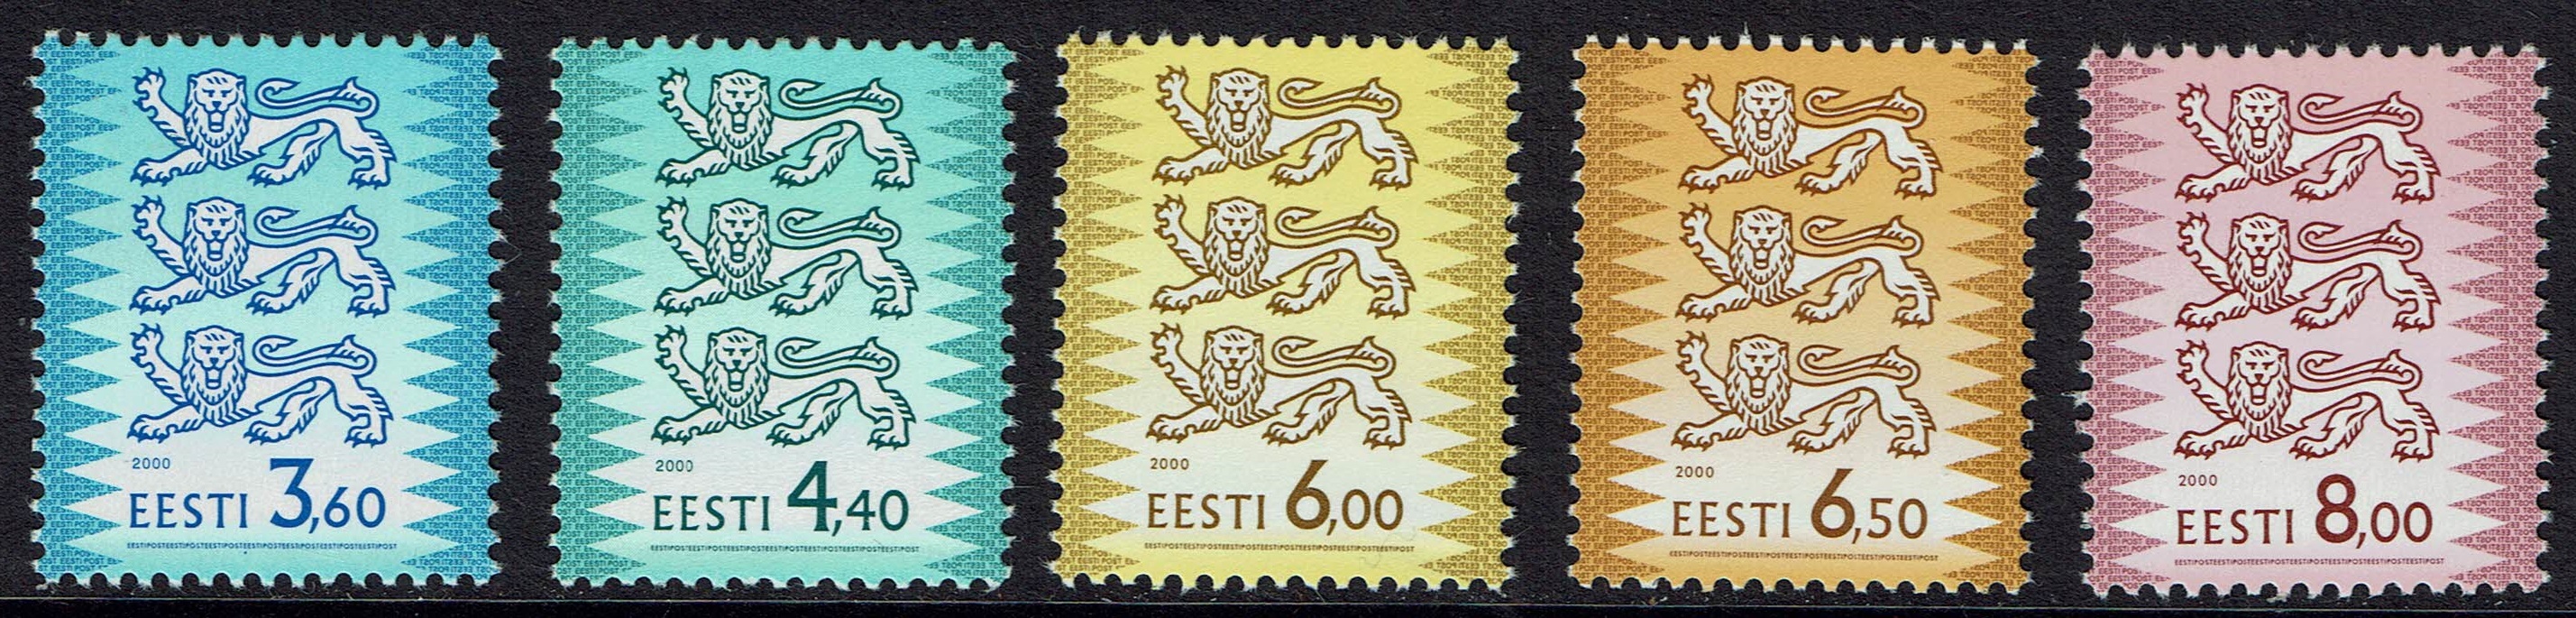 Estonia SG 352-359